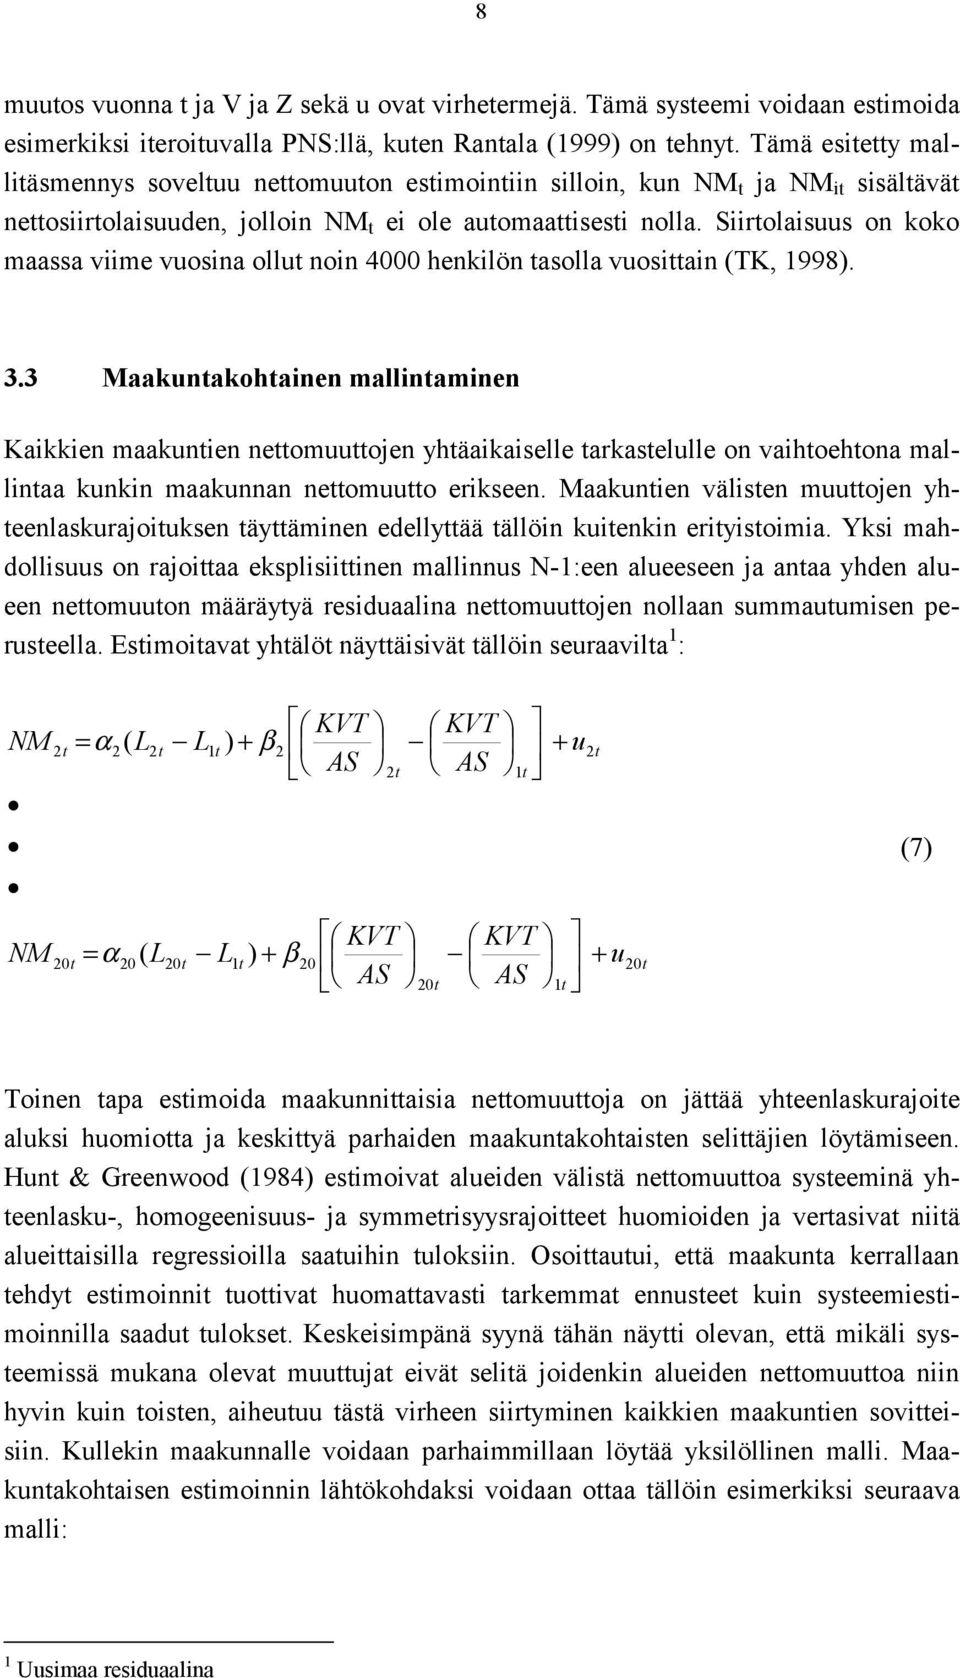 Srolasuus on koko maassa vme vuosna ollu non 4000 henklön asolla vuosan (TK, 1998). 3.